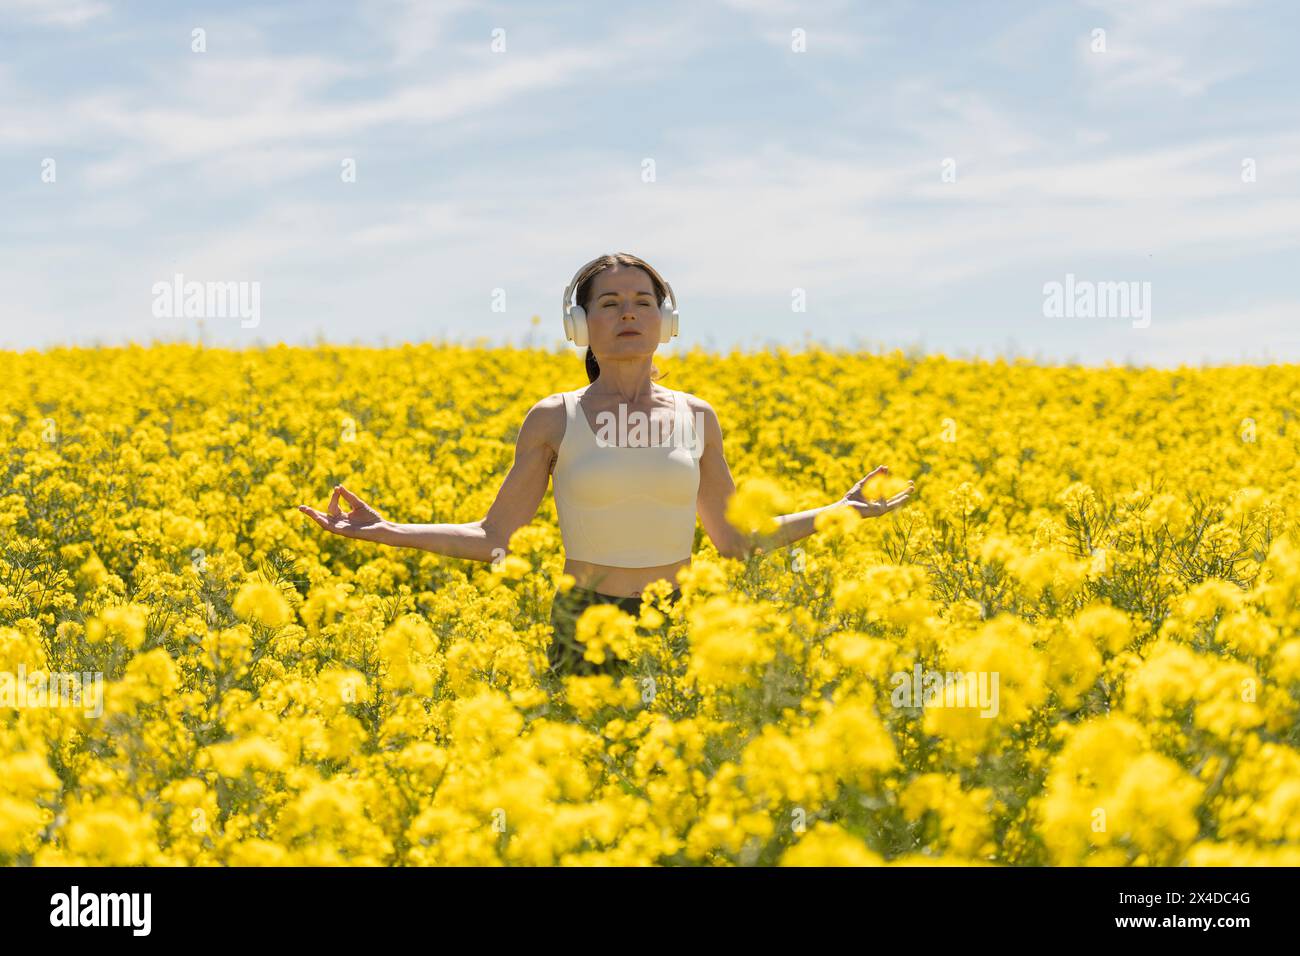 donna che meditava e praticava yoga in un prato pieno di fiori gialli colorati. Relax spirituale nella natura Foto Stock